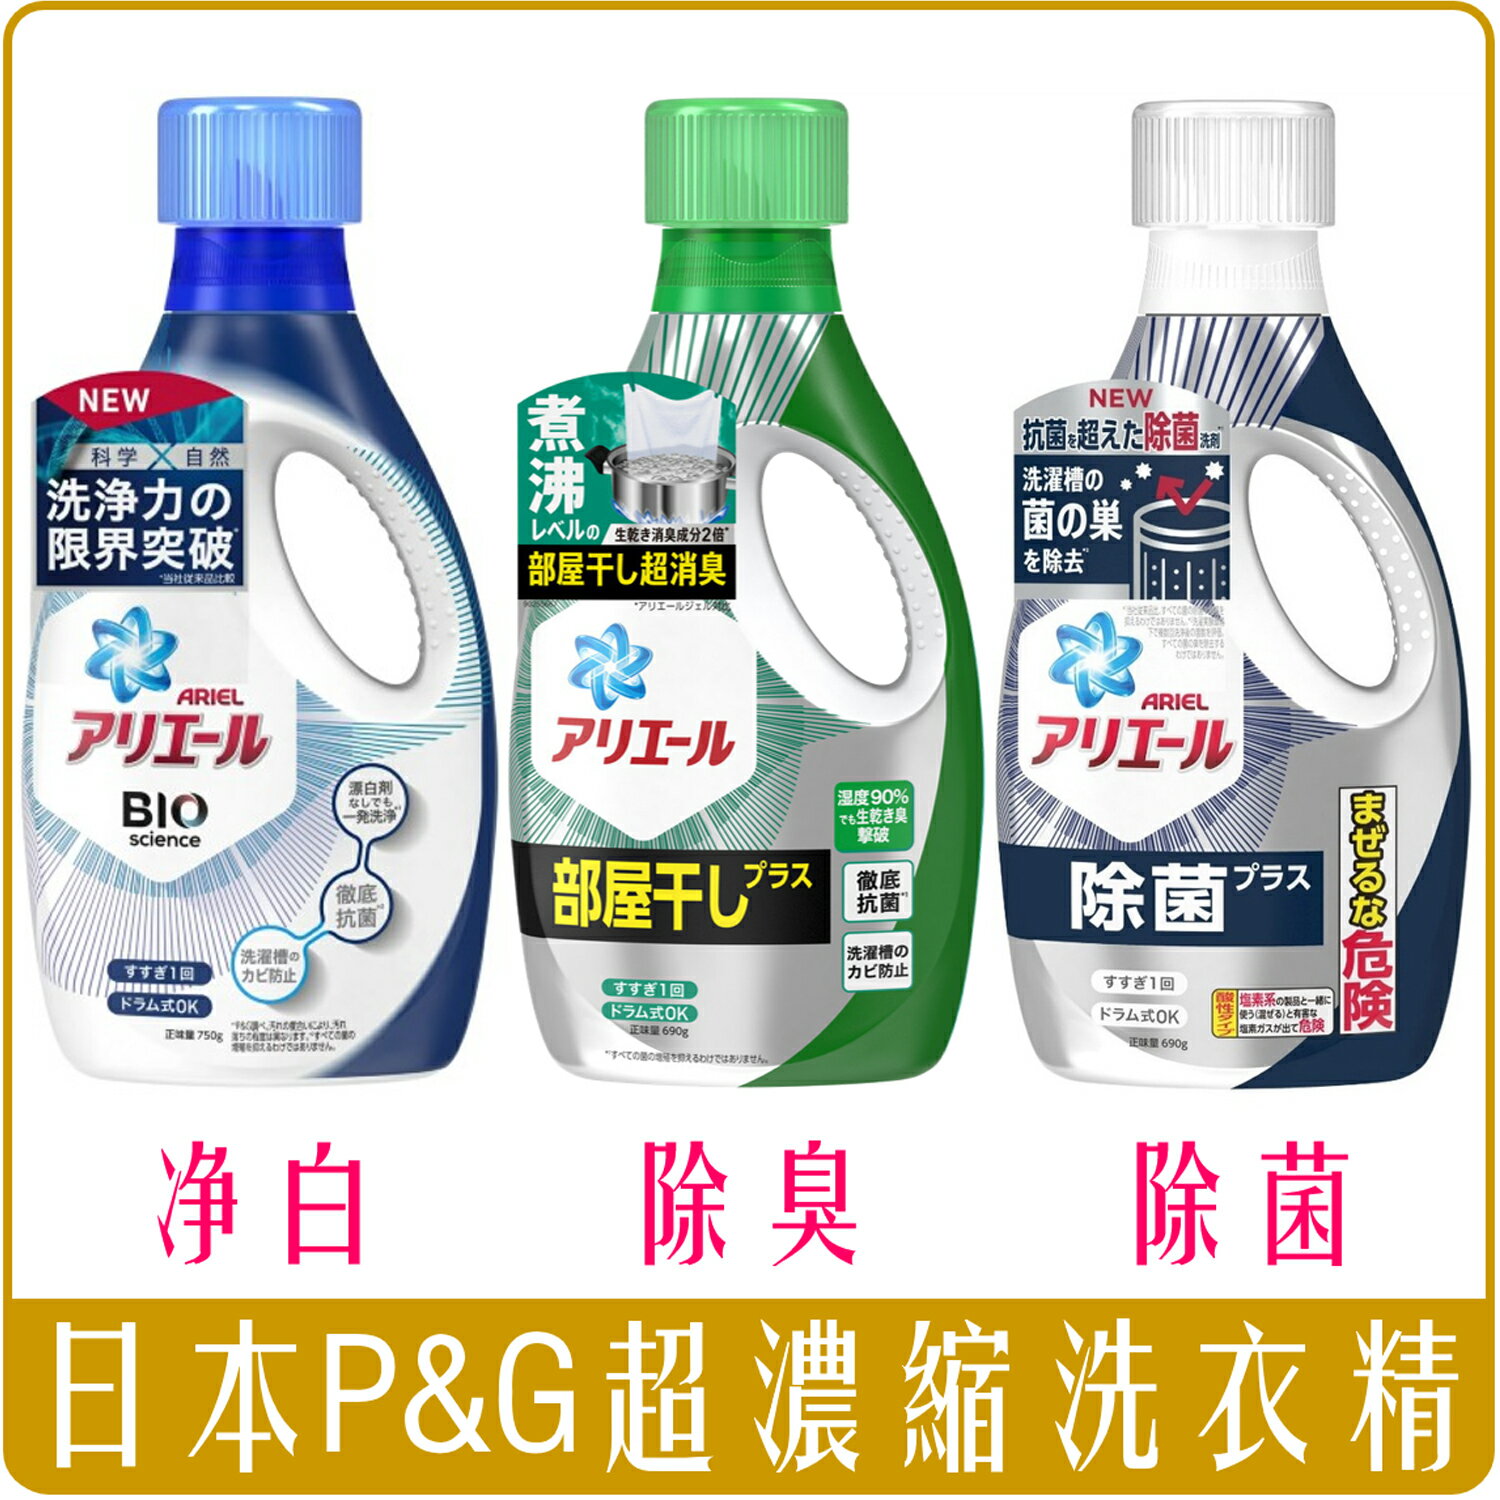 《Chara 微百貨》日本 P&G ARIEL 超濃縮 抗菌 洗衣精 批發 薰衣草 潔白 除菌